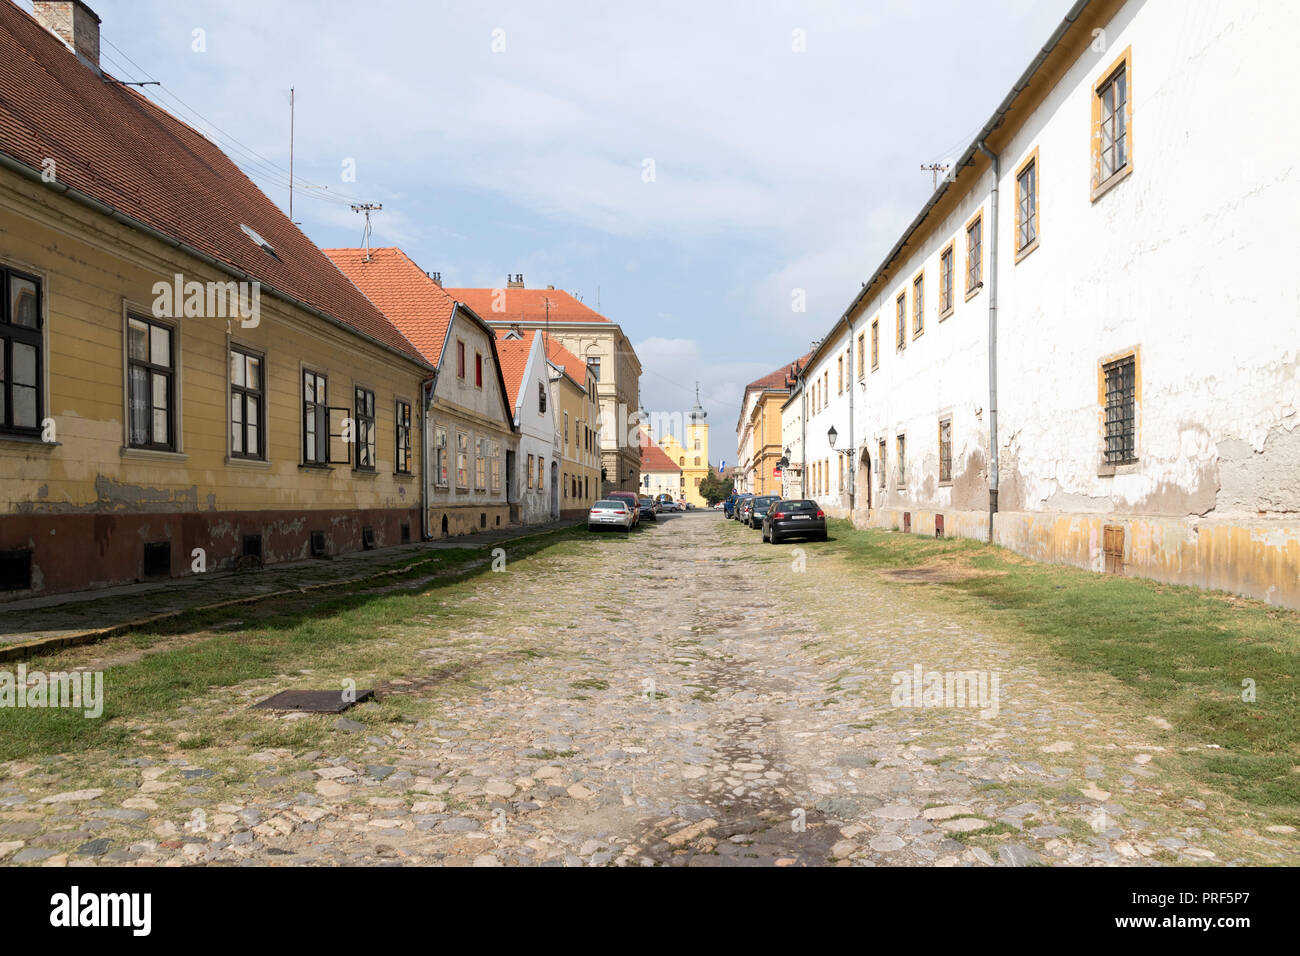 Street in Croatian city of Osijek destroyed in Yoslav wars Stock Photo